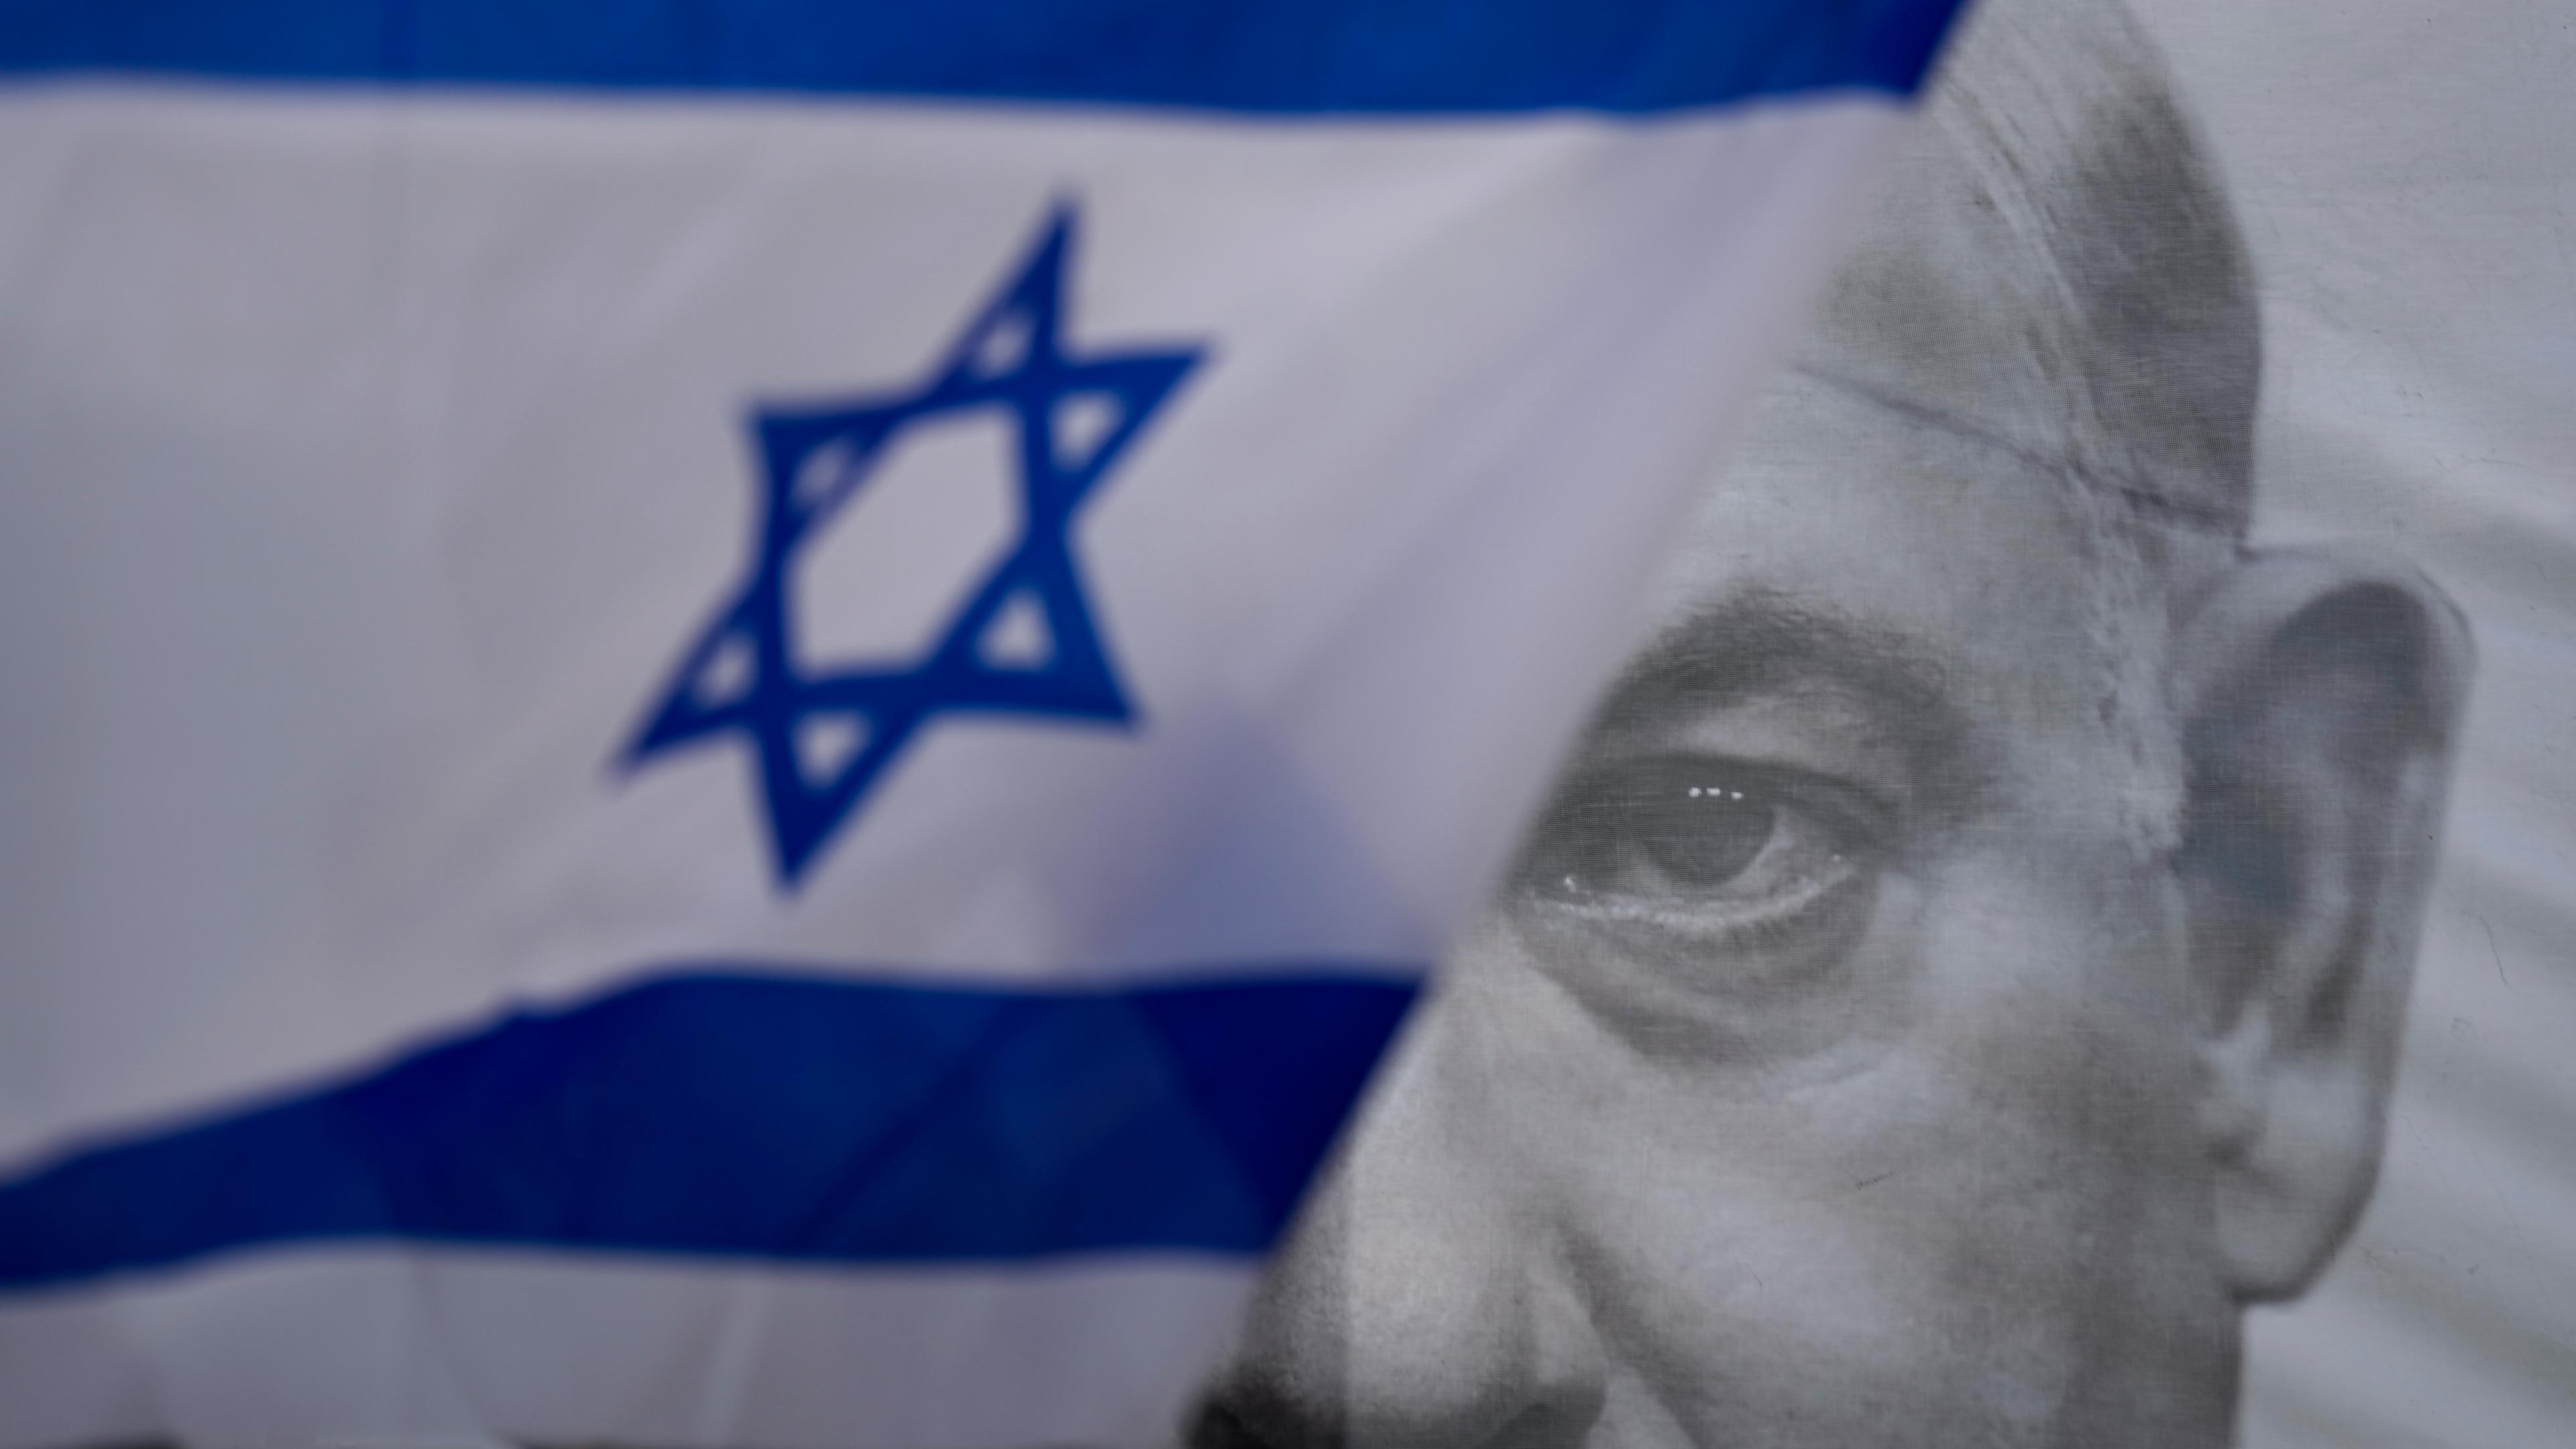 Israelische Nationalflagge vor Porträt von Netanjahu